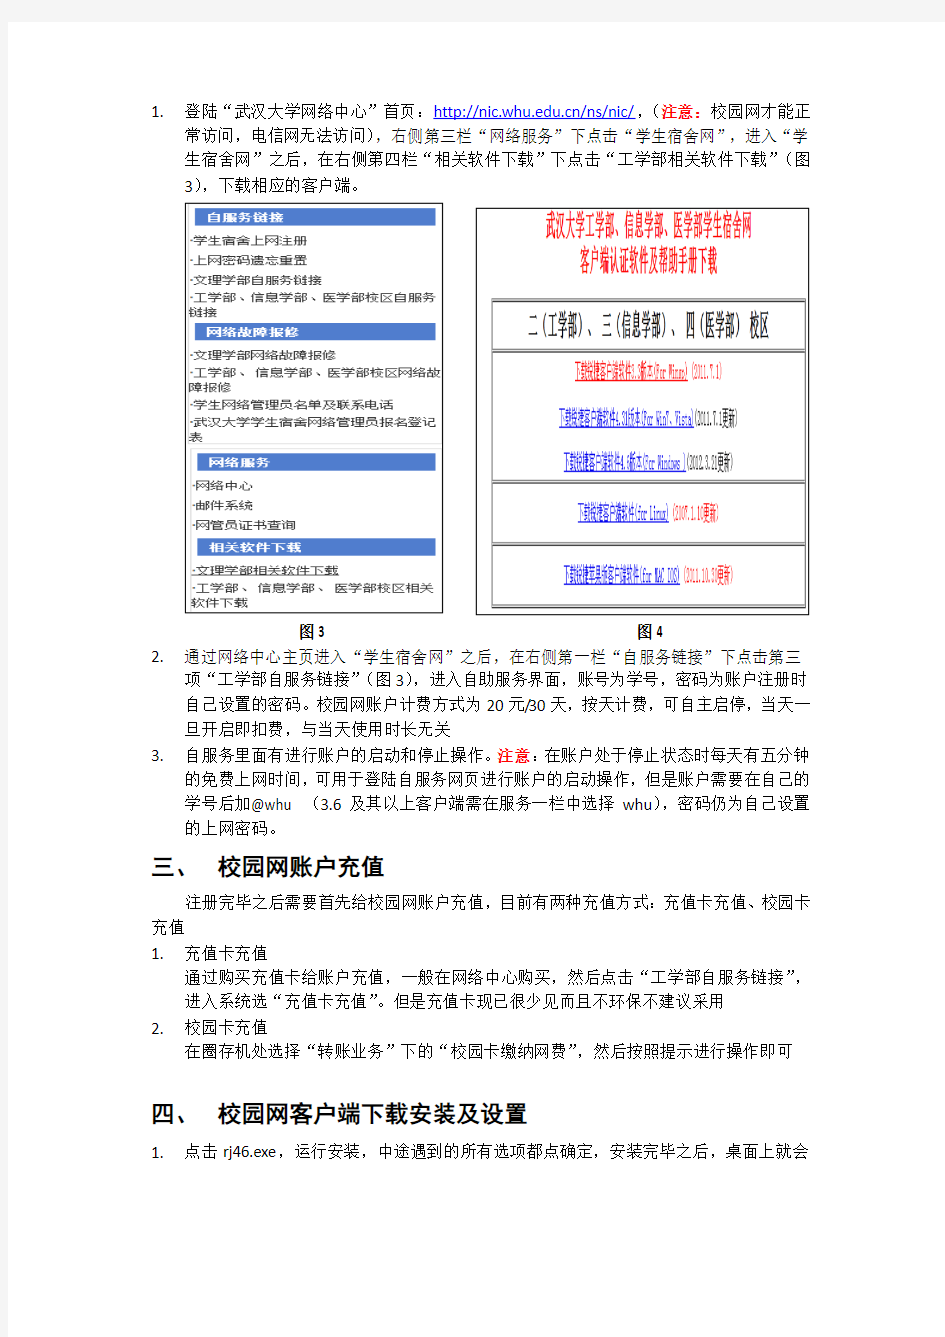 武汉大学校园网(锐捷)新生安装使用说明1.0